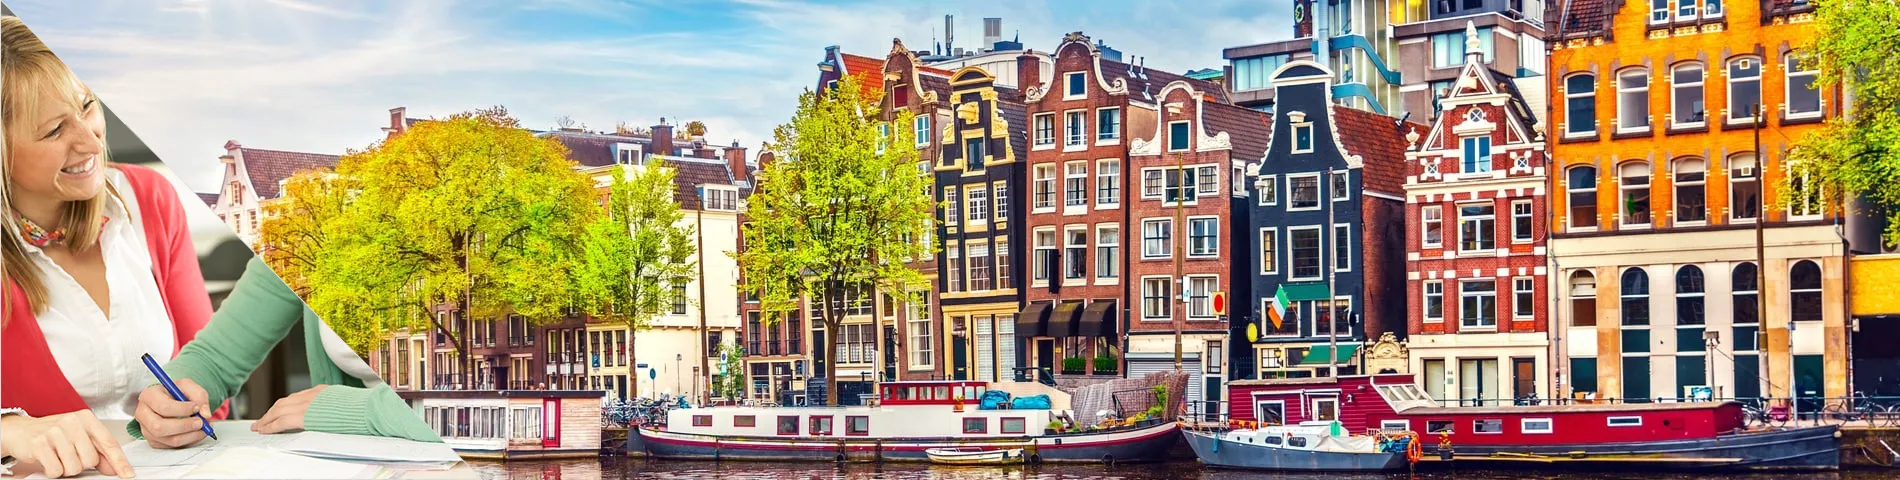 阿姆斯特丹 - 在老师的家中学习和生活